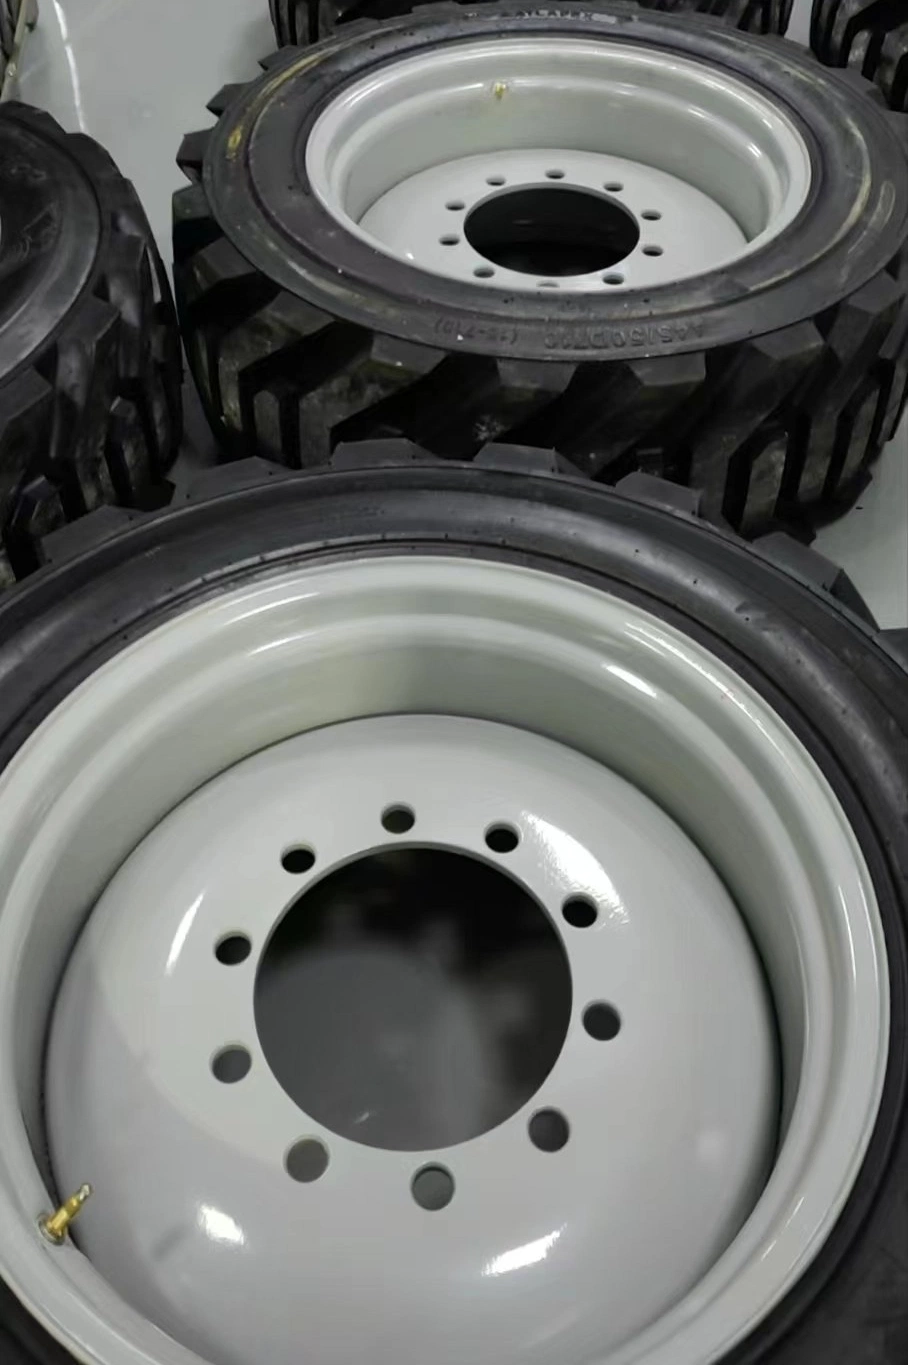 Pneus industriais OTR pneu Bias SKS 10-16.5 12-16.5 14-17.5 Skid Pneu de direcção para retroescavadora